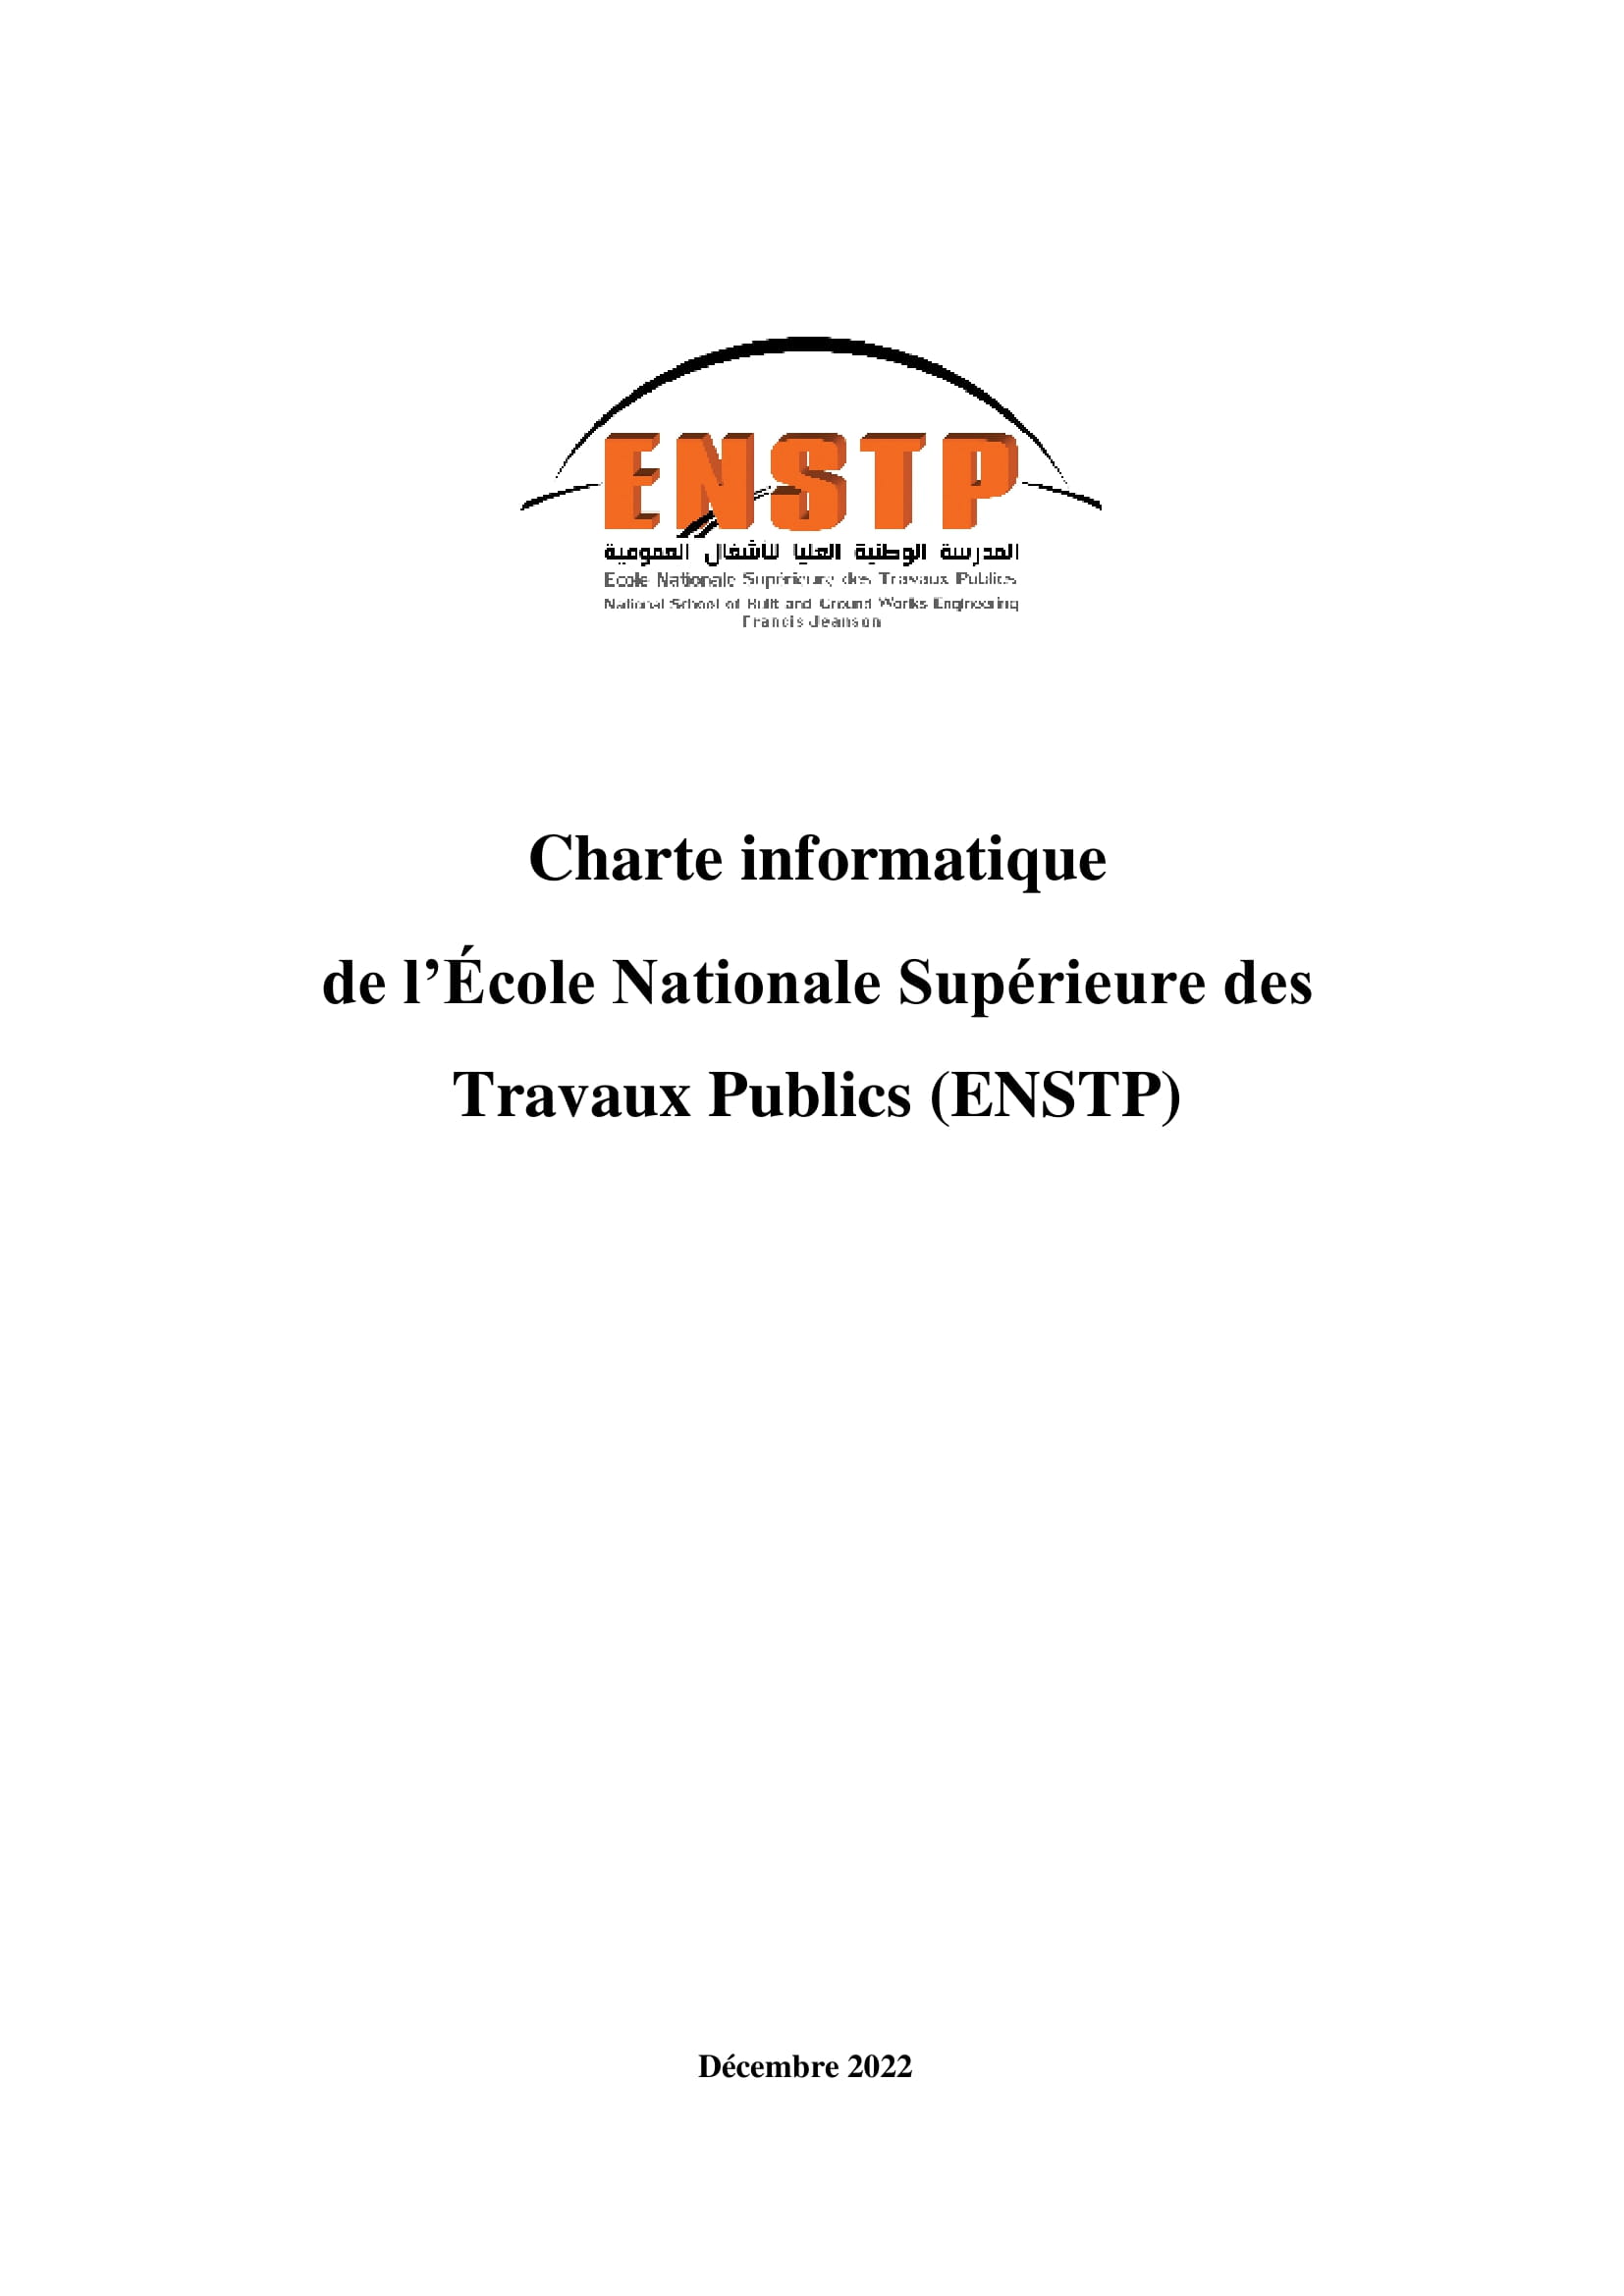 ENSTP Charte informatique 1